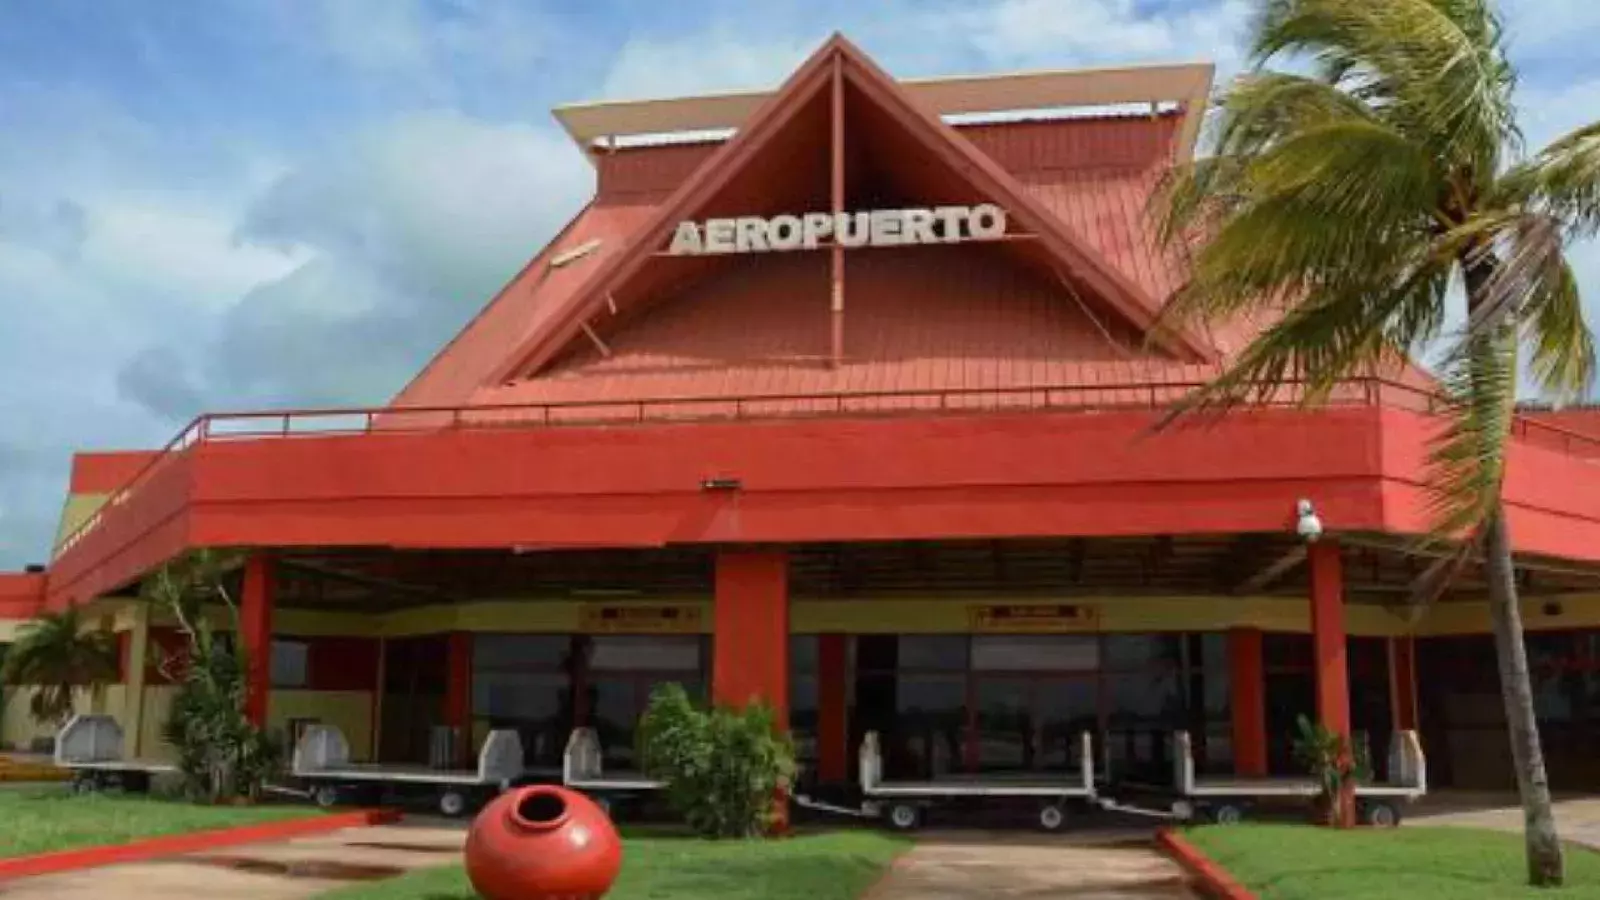 Aeropuerto Internacional Ignacio Agramonte de Camagüey